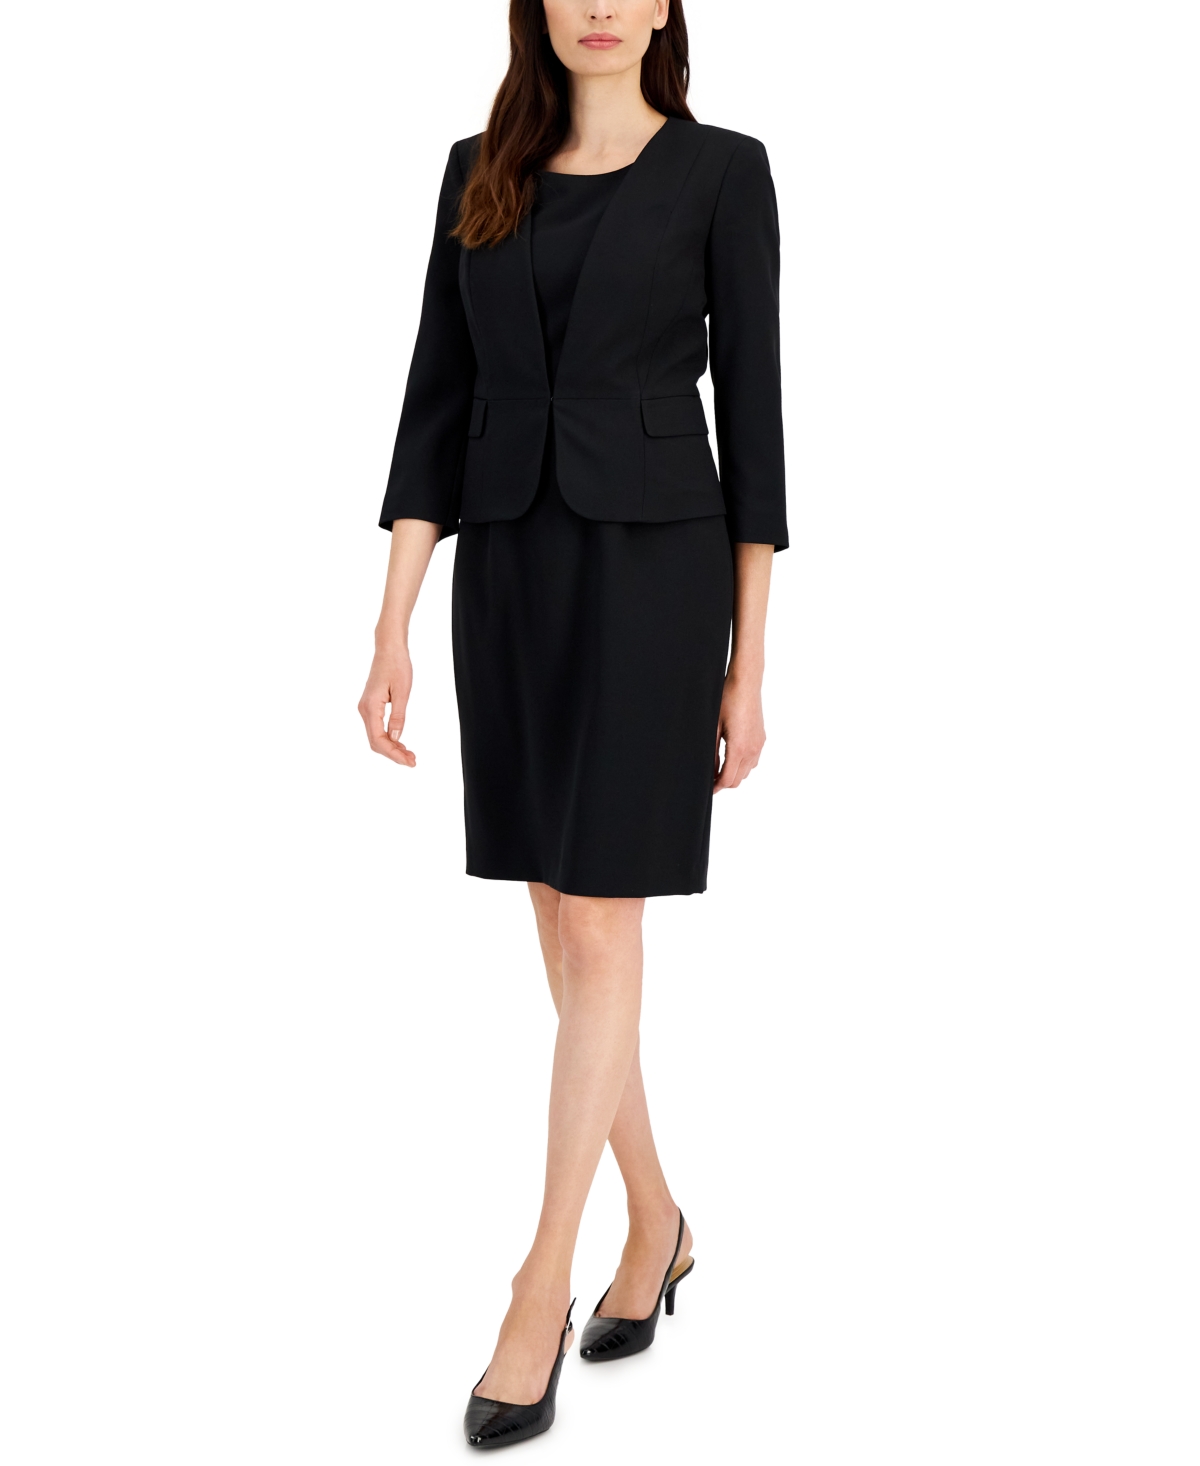 Le Suit Women's Open-front Sheath Dress Suit, Regular And Petite Sizes ...